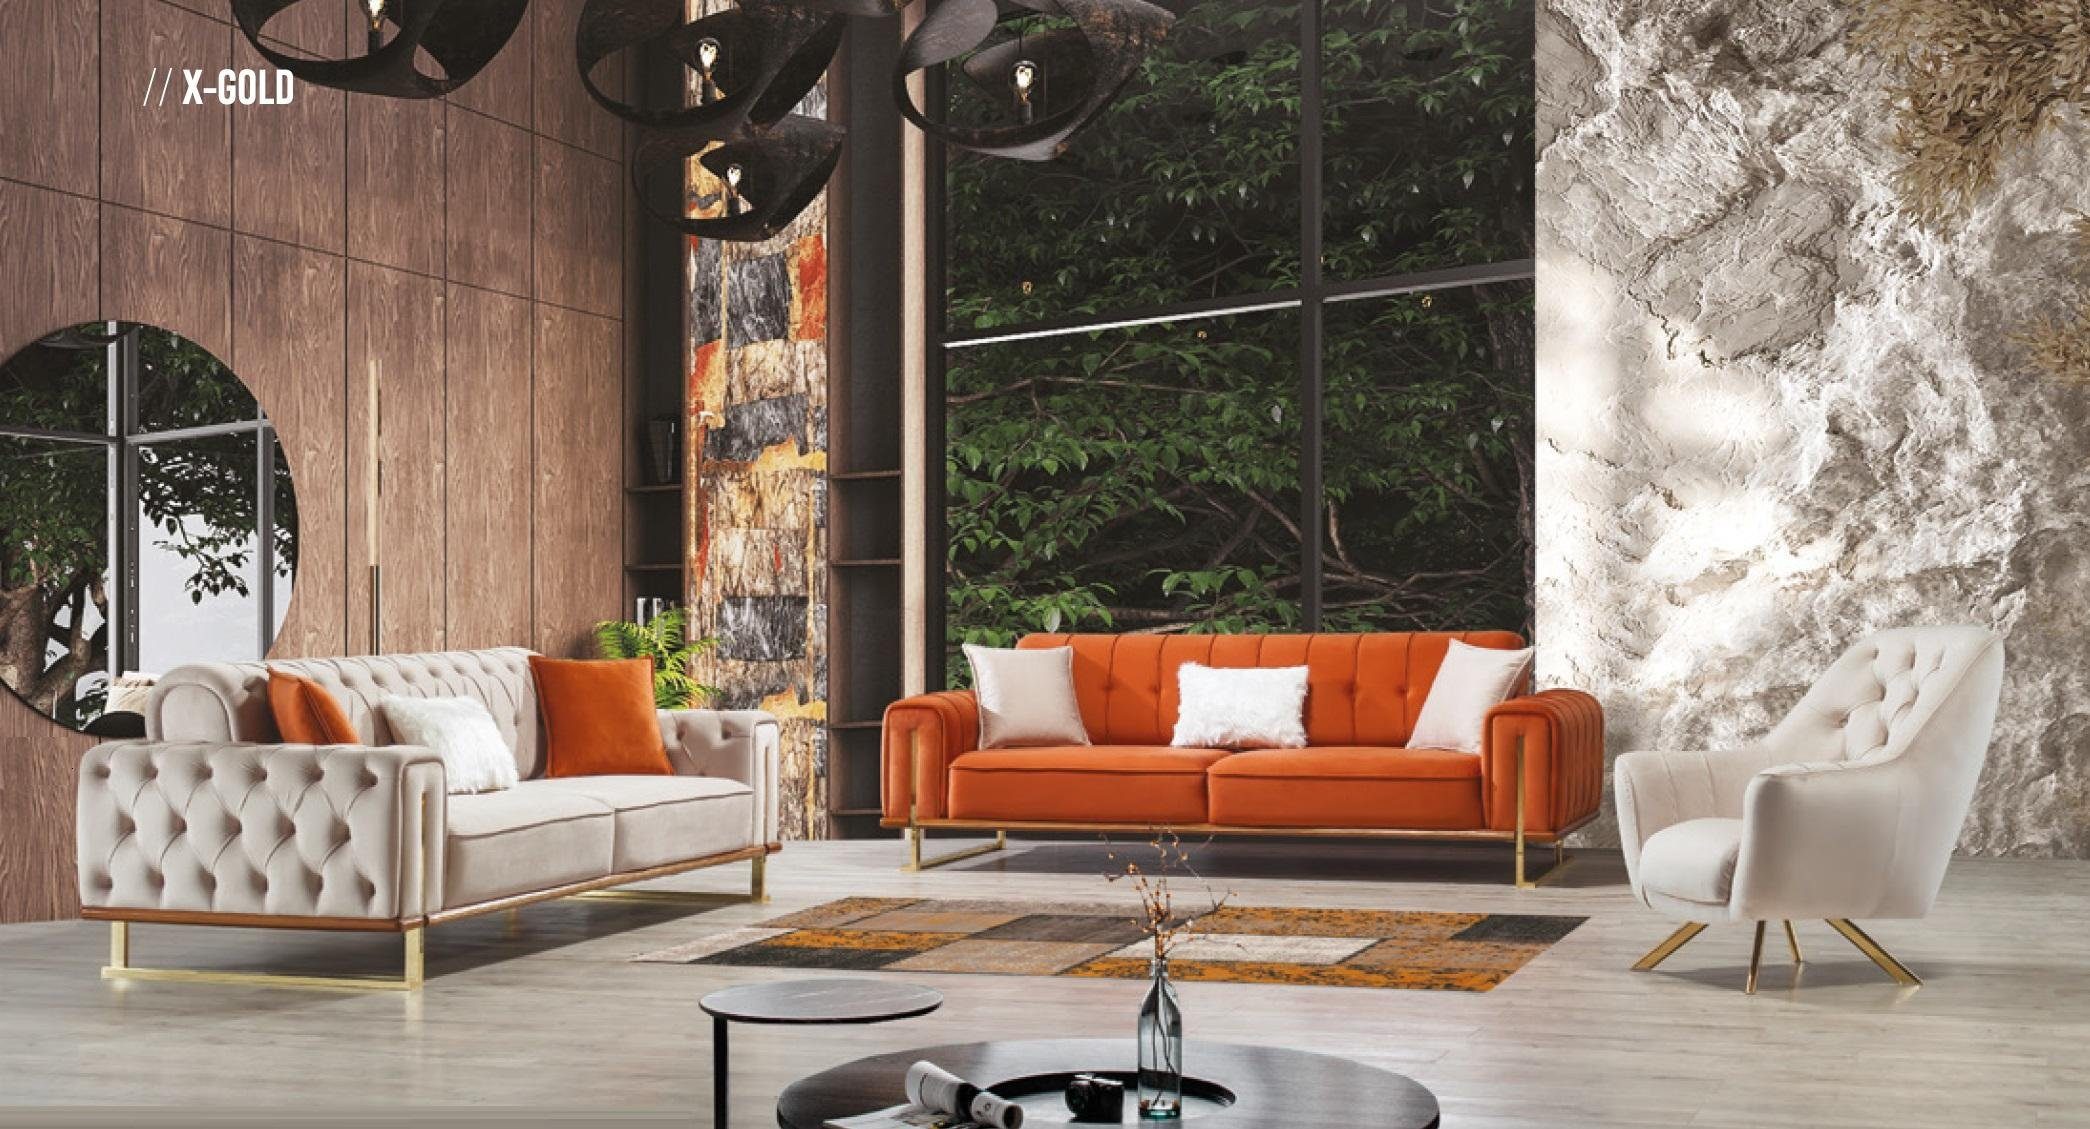 3 Sofa Möbel, JVmoebel Made Dreisitzer Couch Chesterfield Luxus in Europe Oranger Design Sitzer